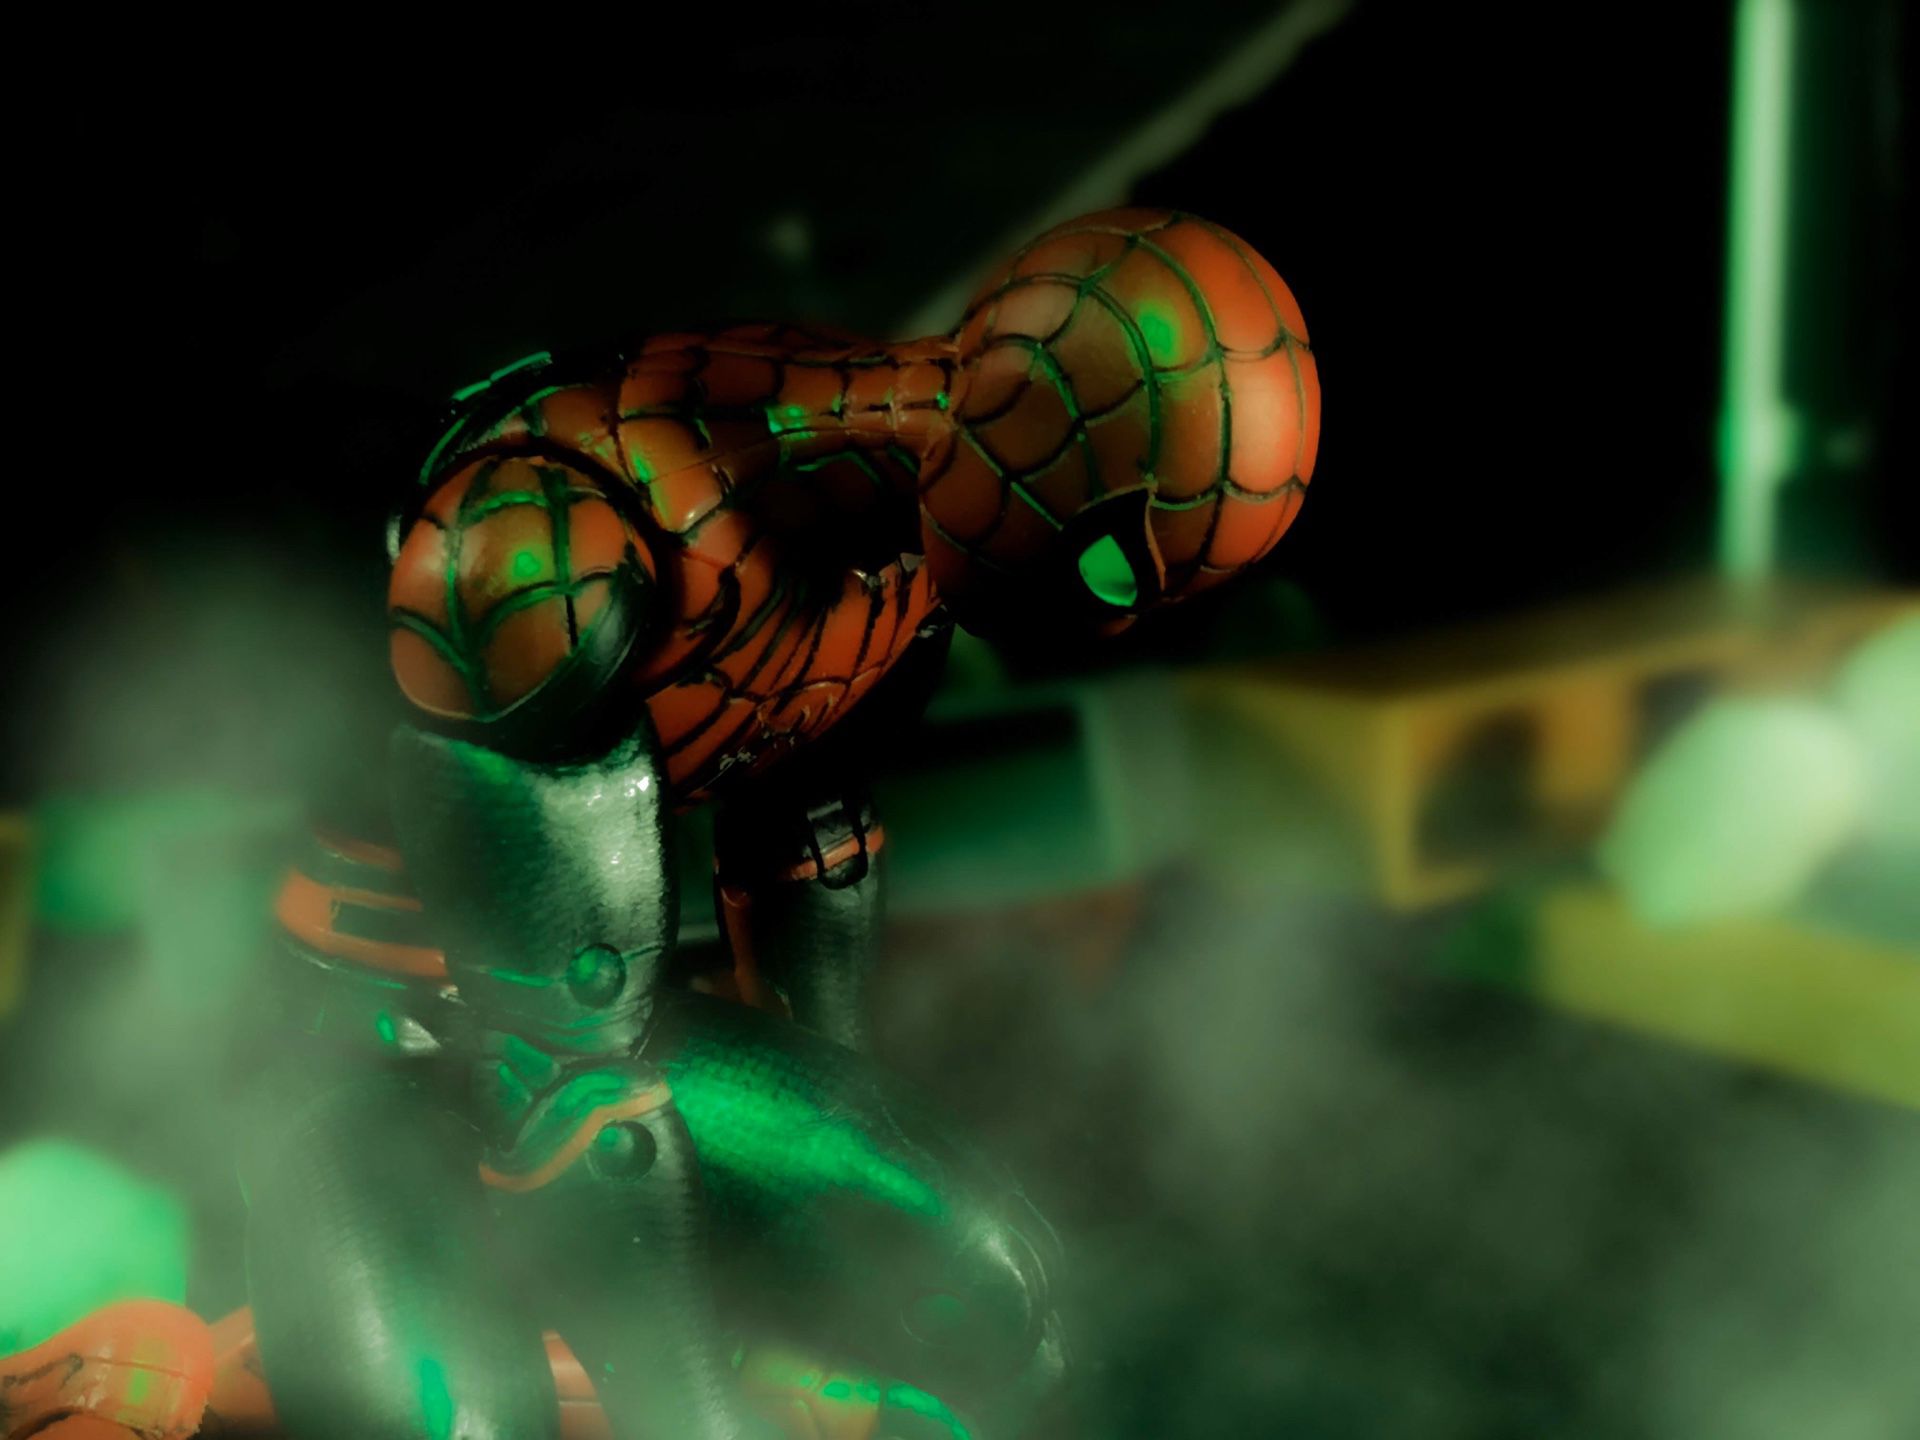 Marvel Legends FFH Spider-Man action figure